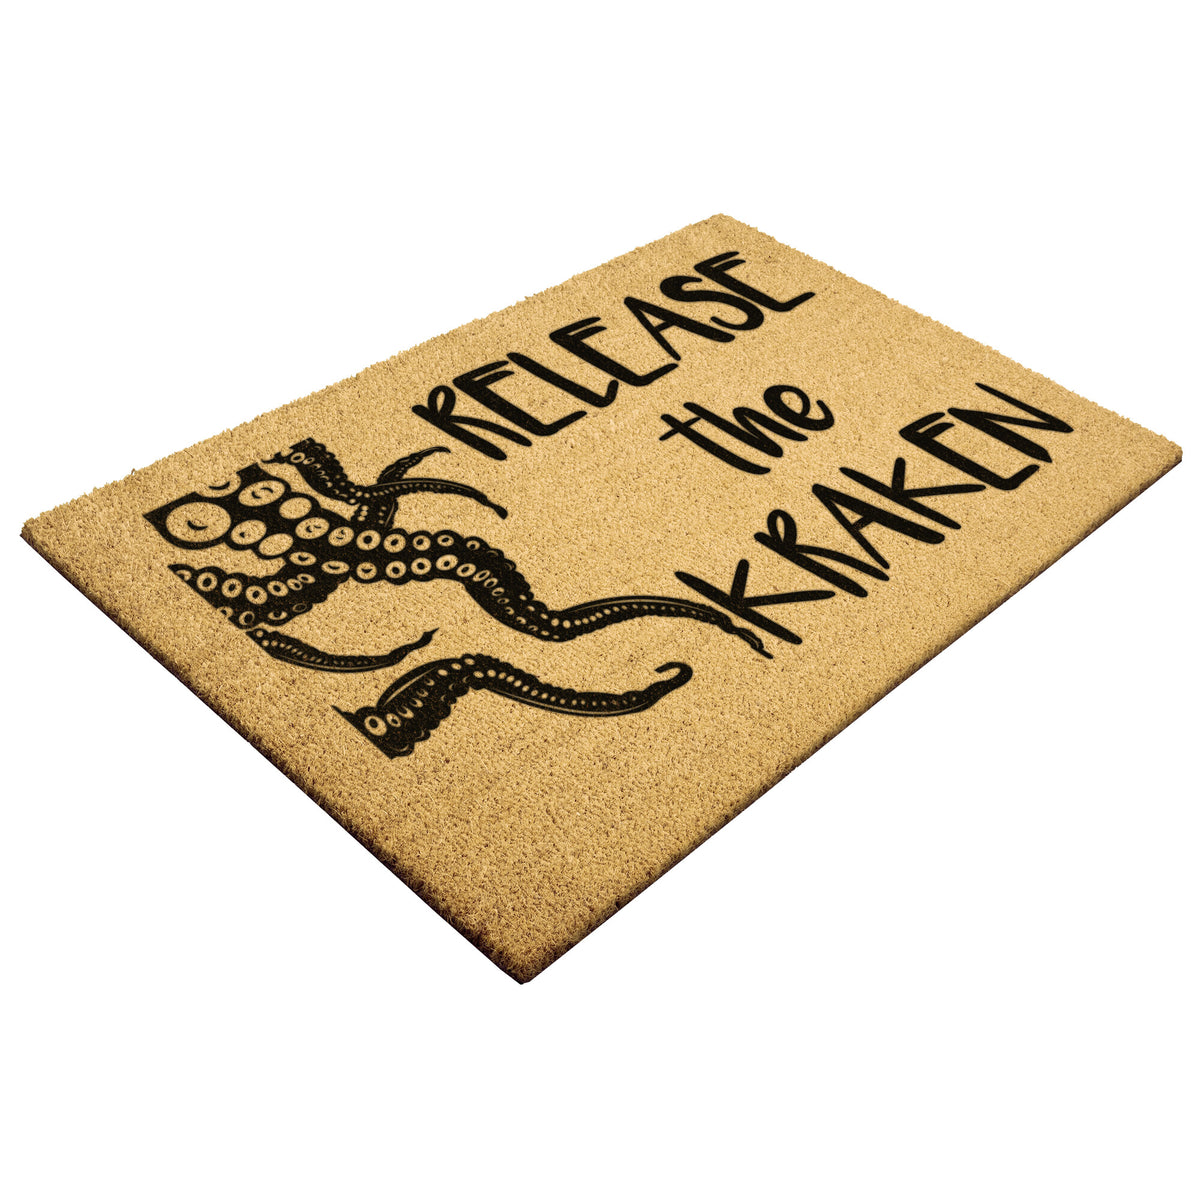 Release The Kraken Doormat